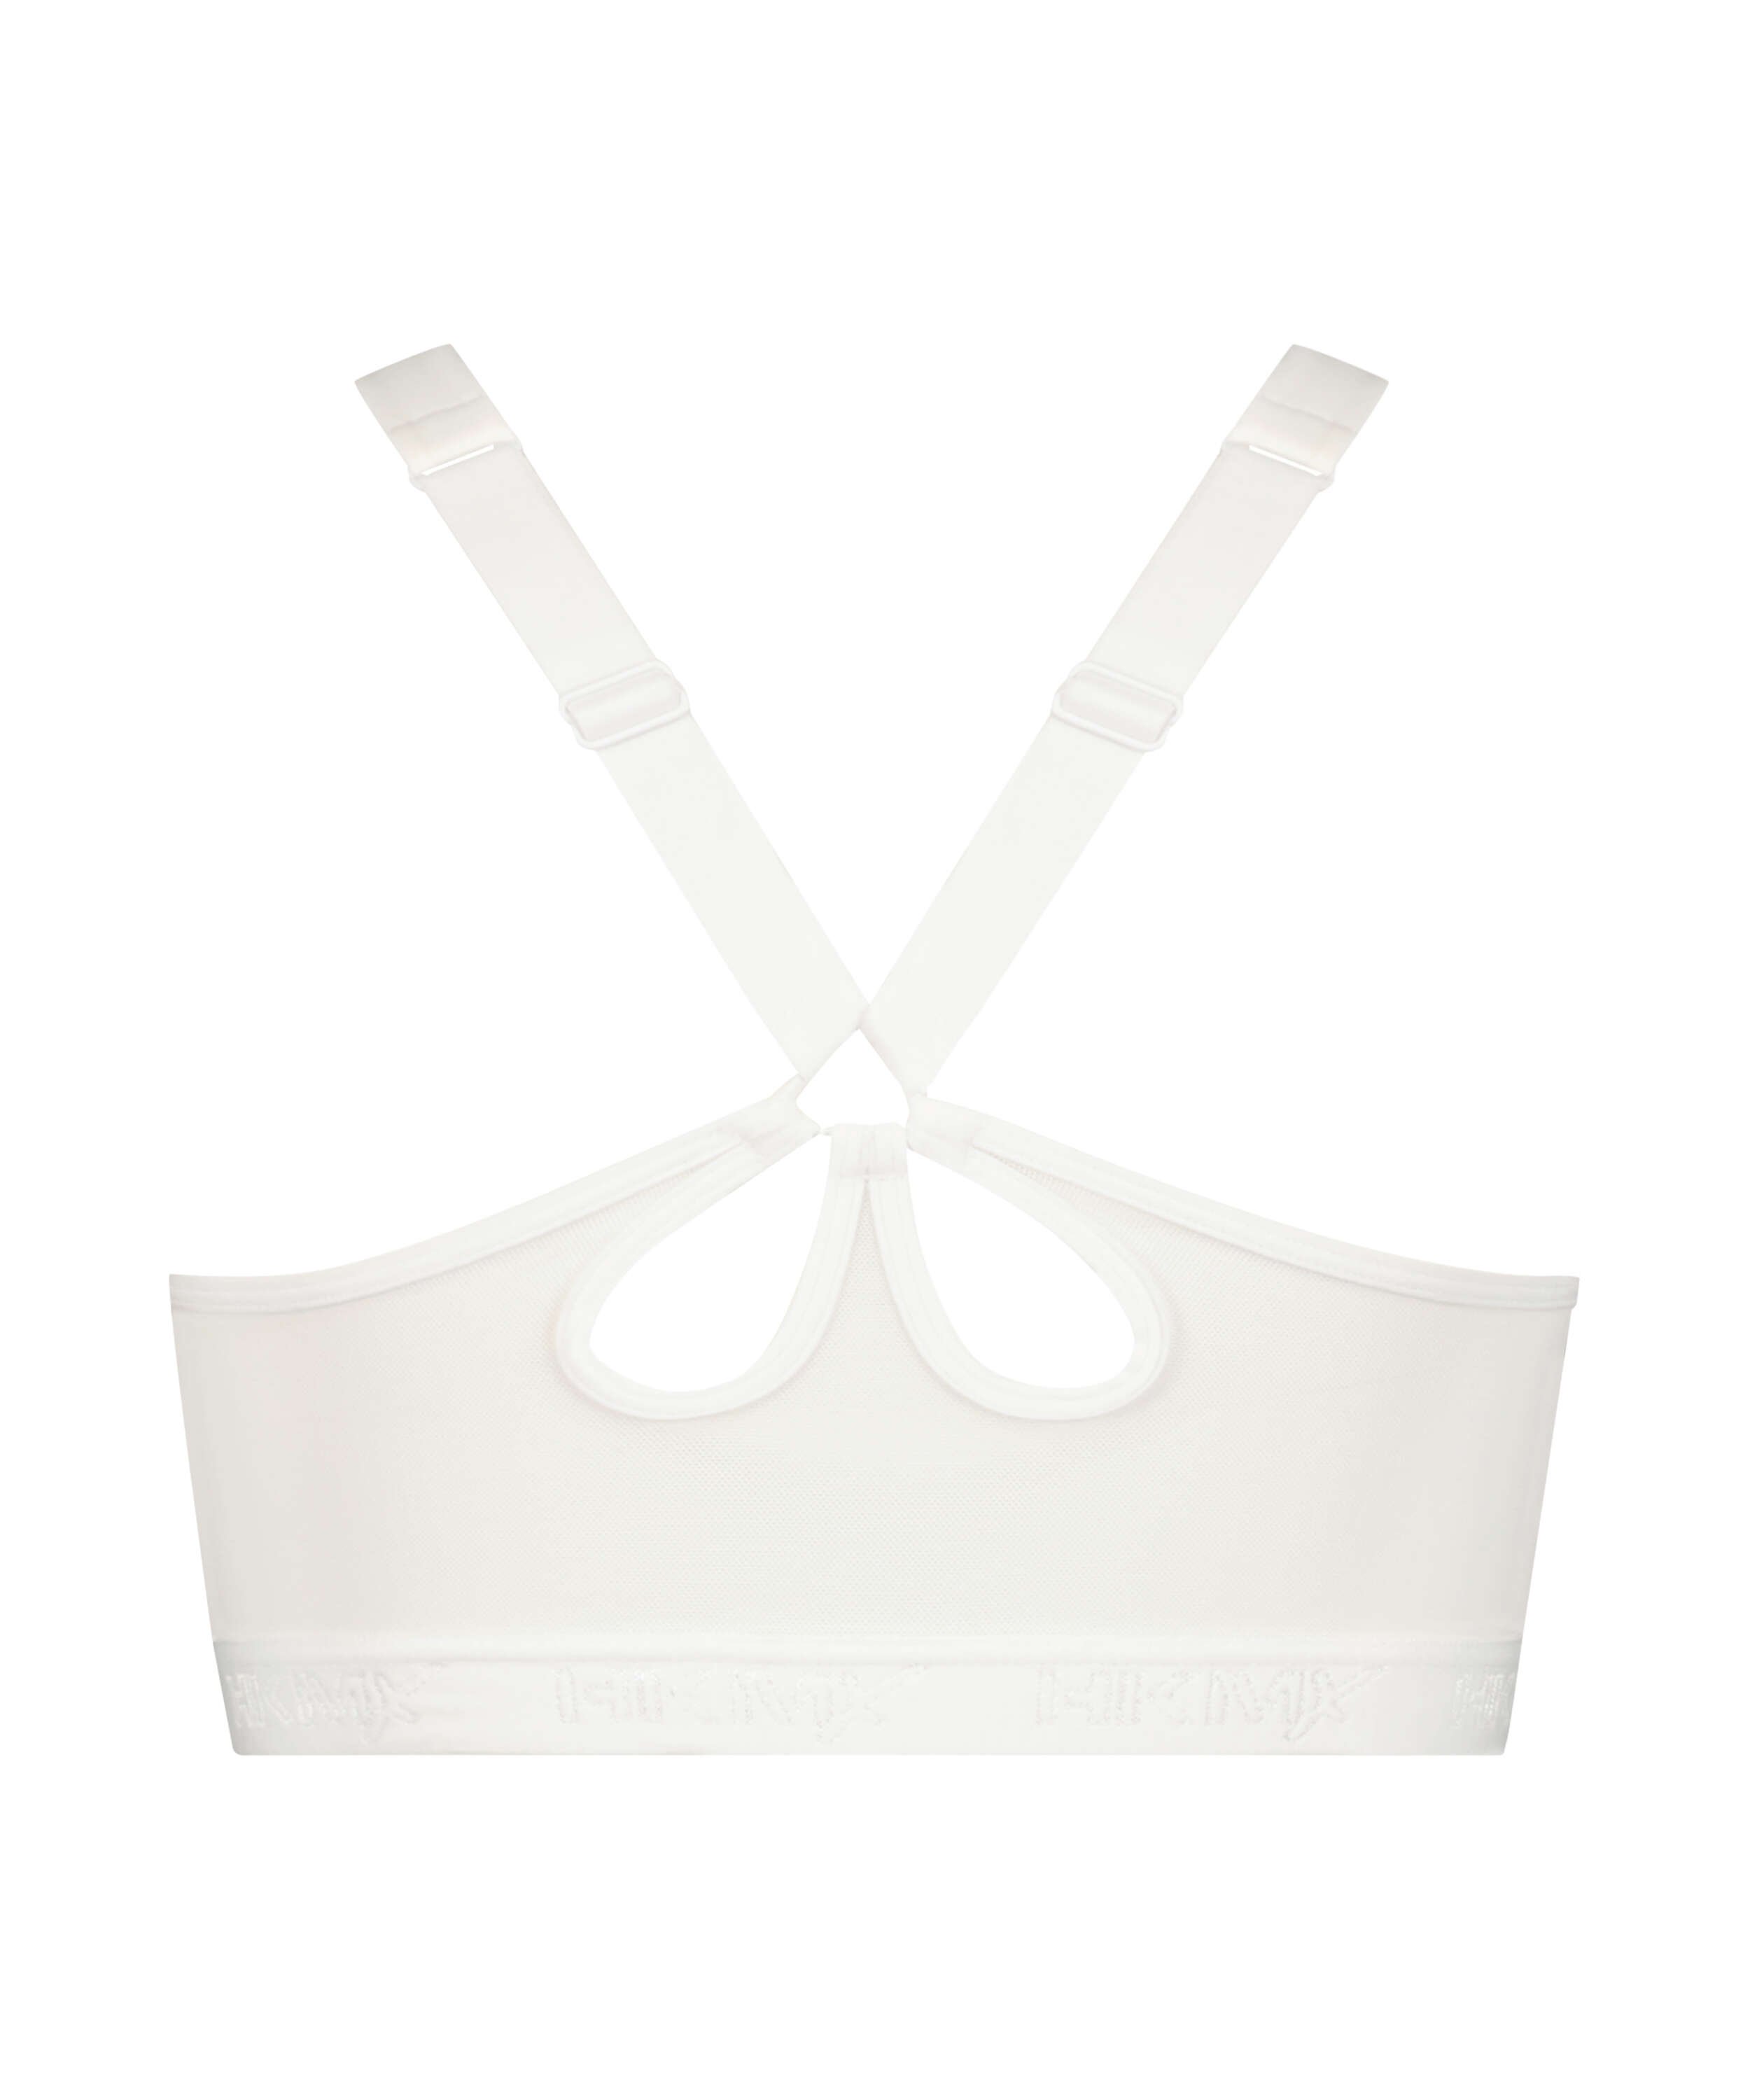 HKMX Sports bra The Pro Level 3, White, main